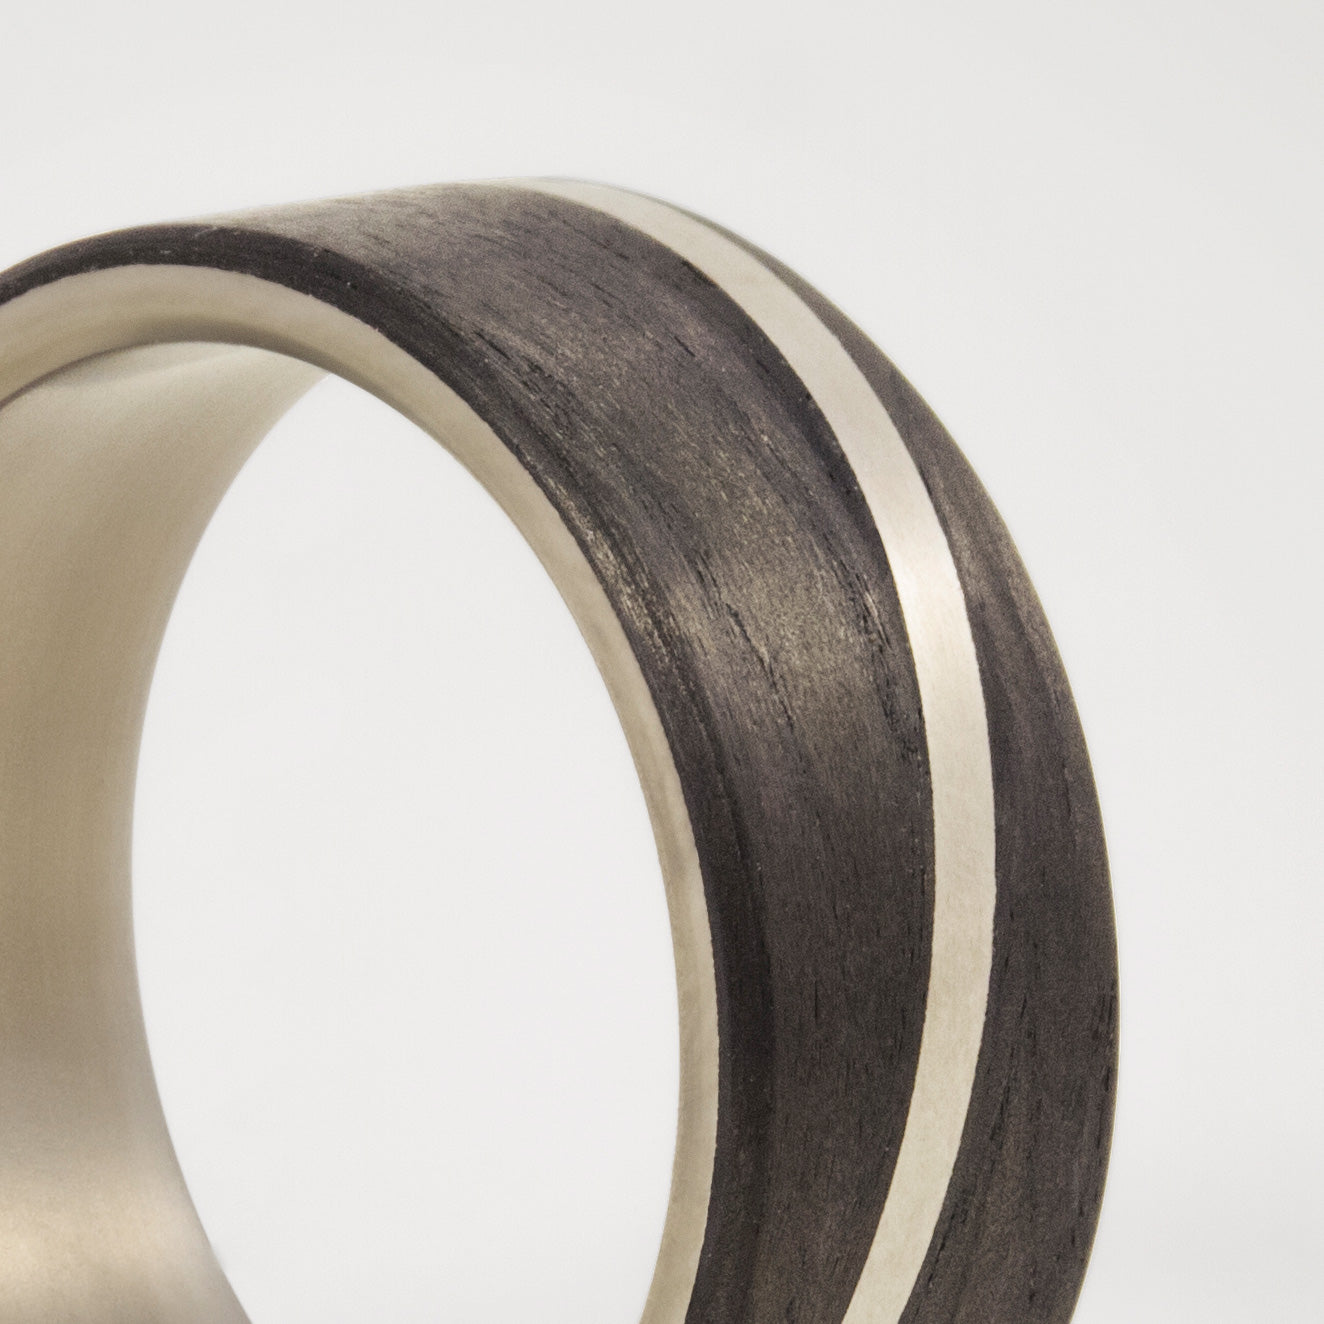 Carbon fiber and titanium Diagonal Ring